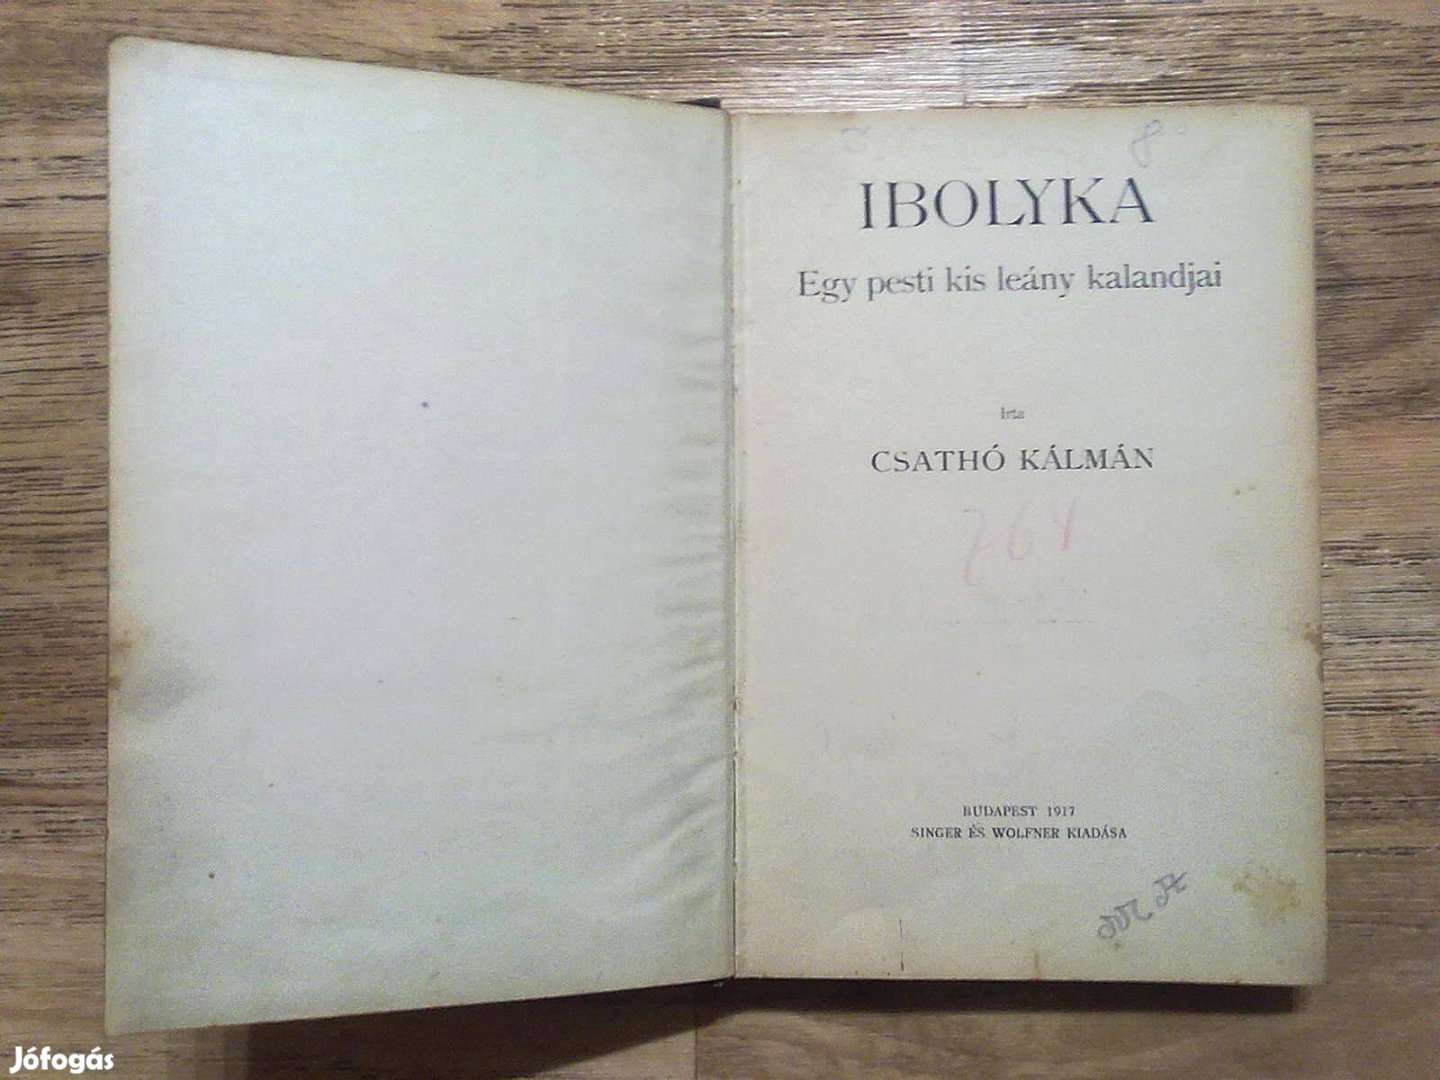 Csathó Kálmán: Ibolyka - Egy pesti kis leány kalandjai(1917-es kiadás